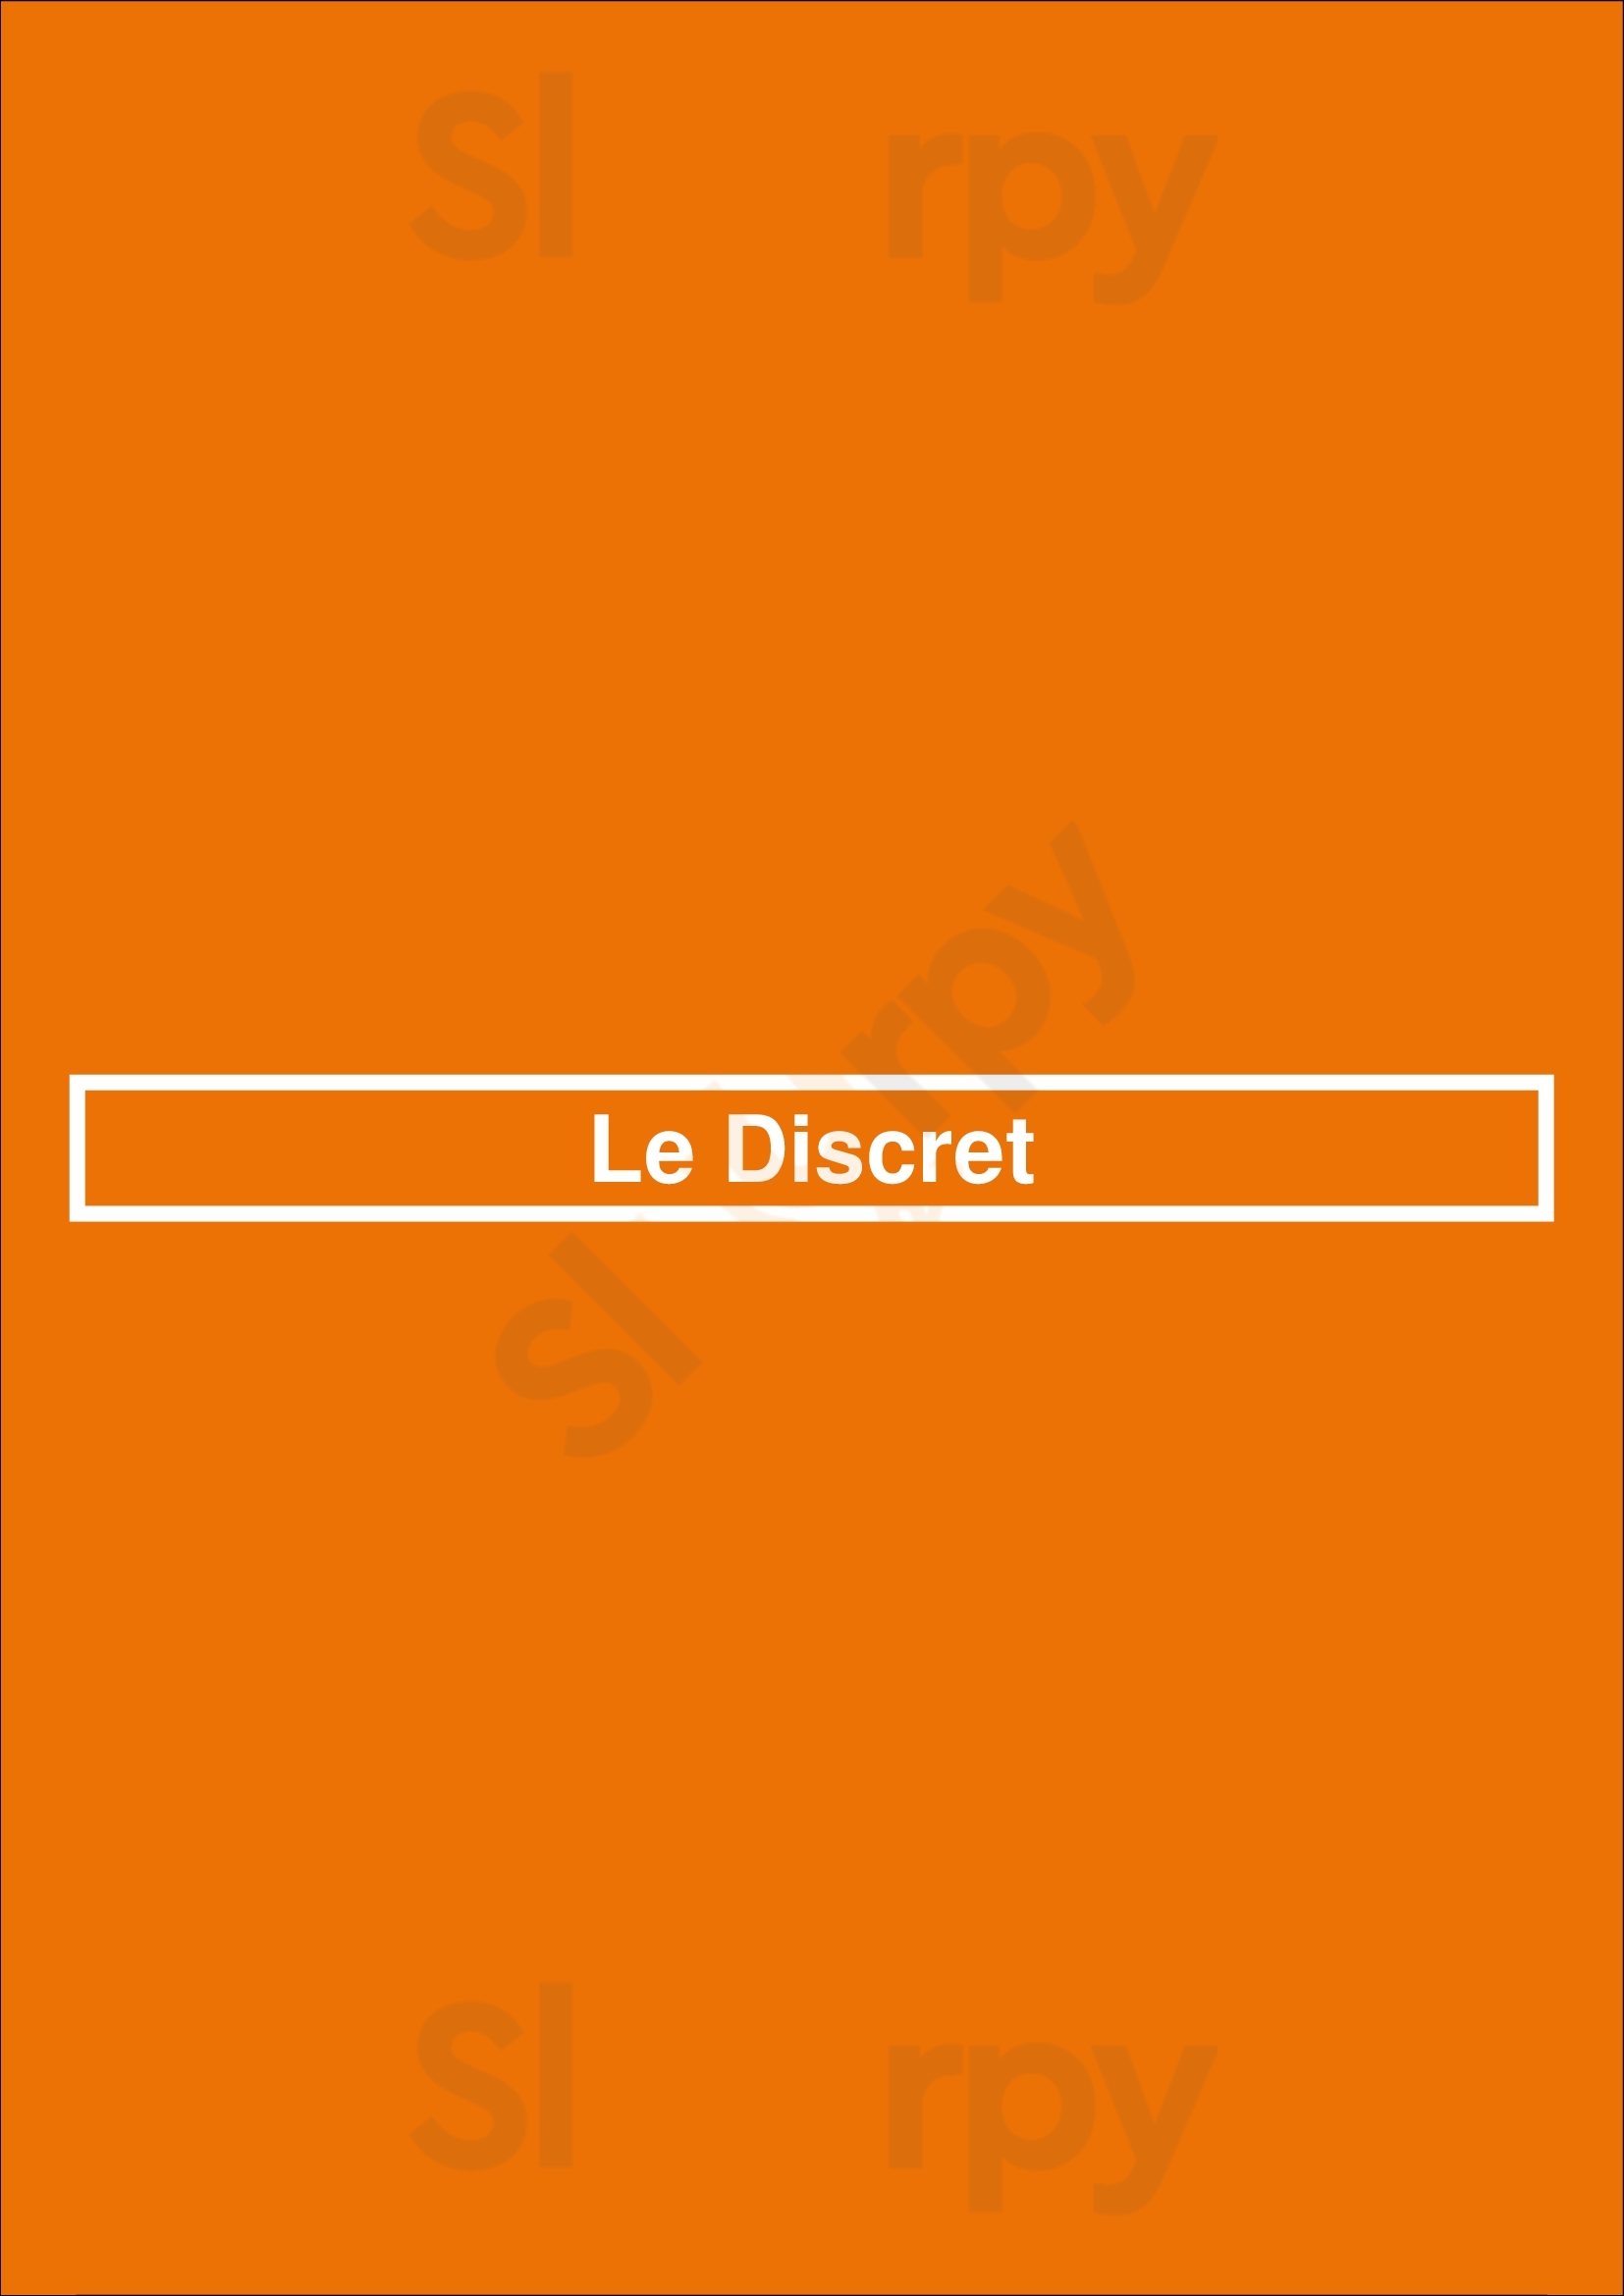 Le Discret Paris Menu - 1